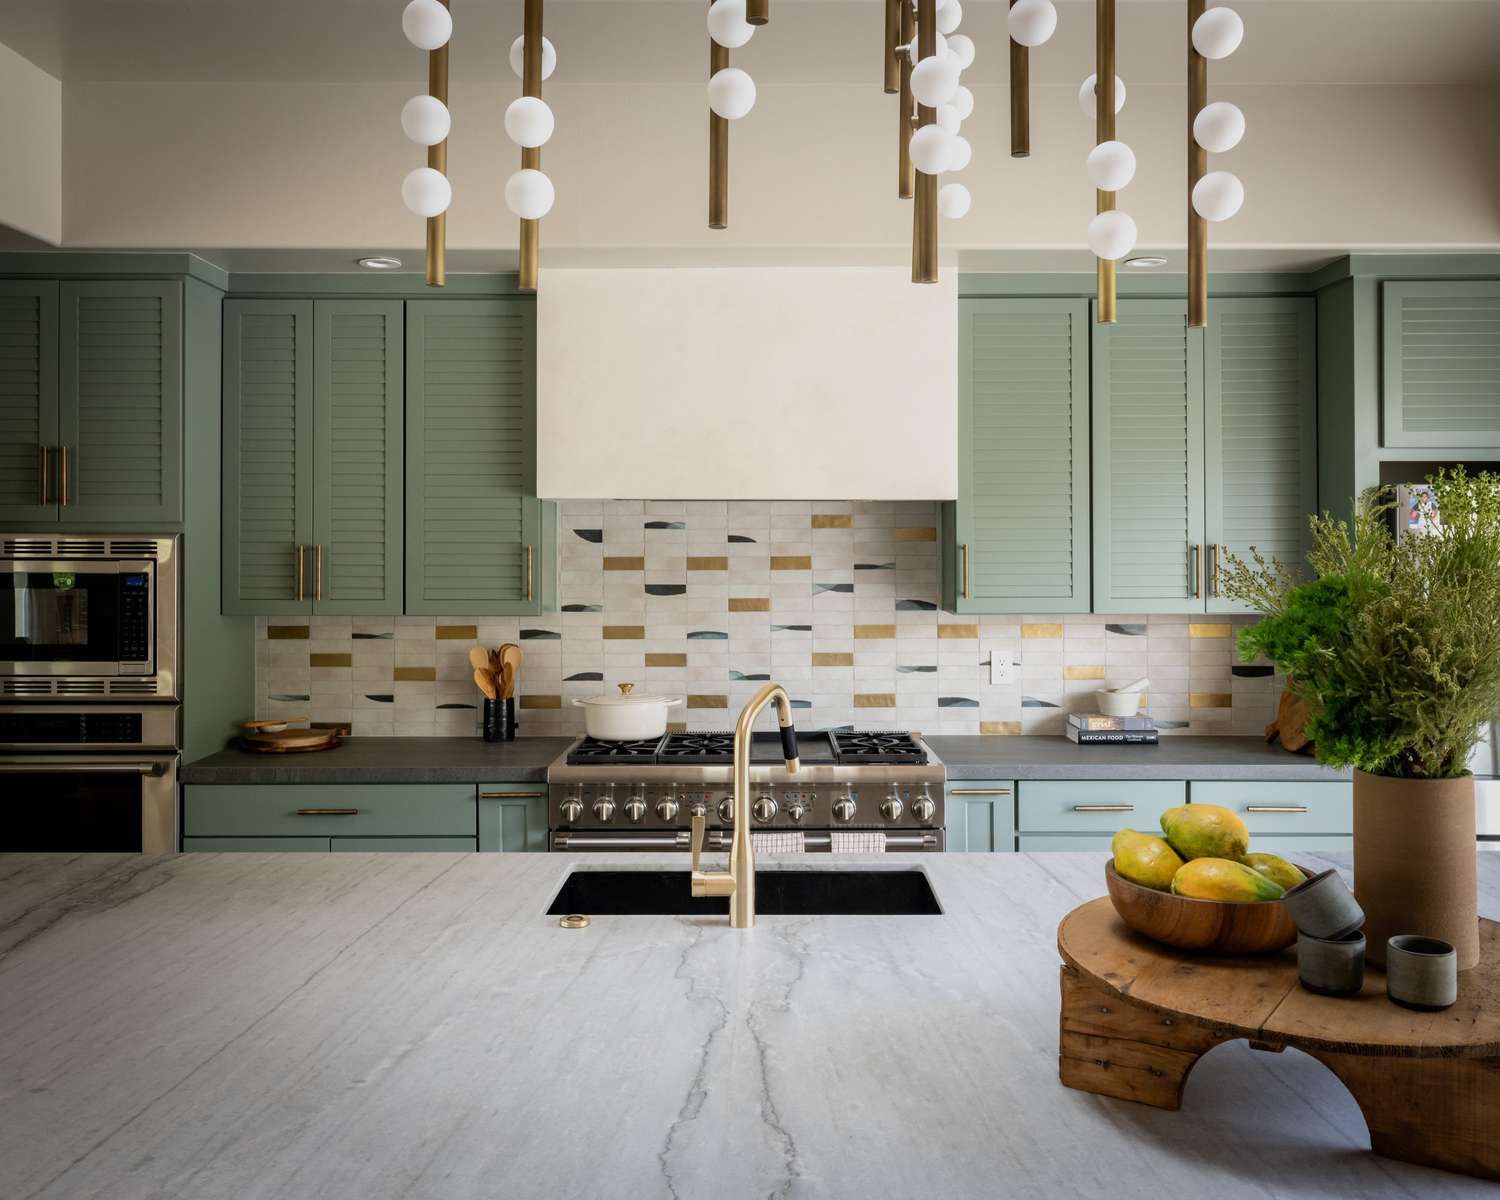 cozinha branca moderna com armários verde-mar e backsplash exclusivo